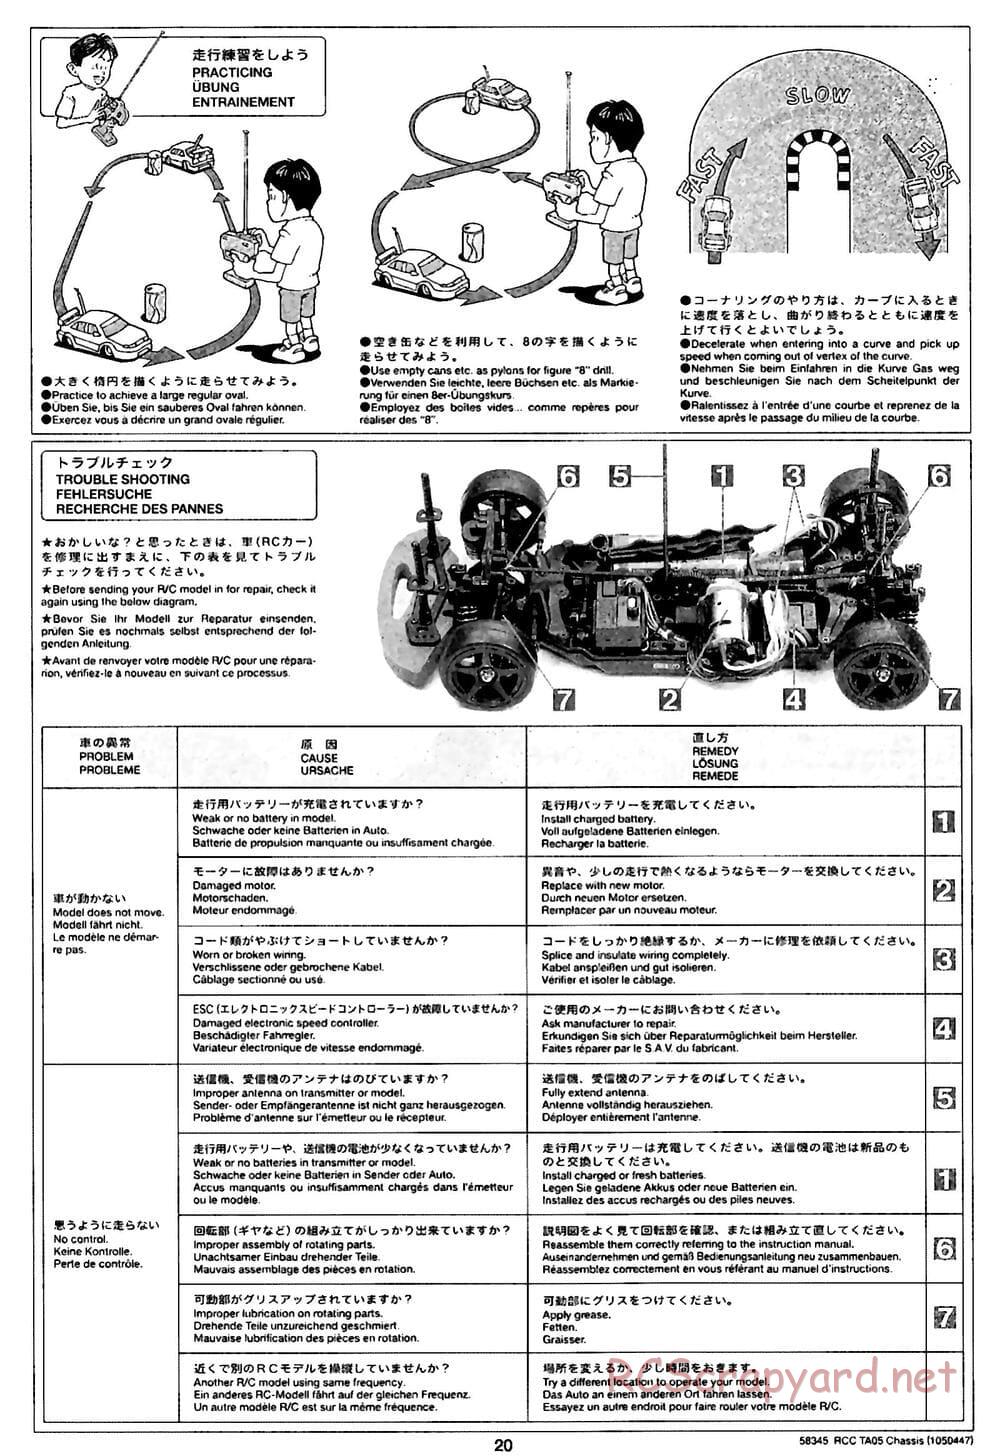 Tamiya - TA05 Chassis - Manual - Page 20